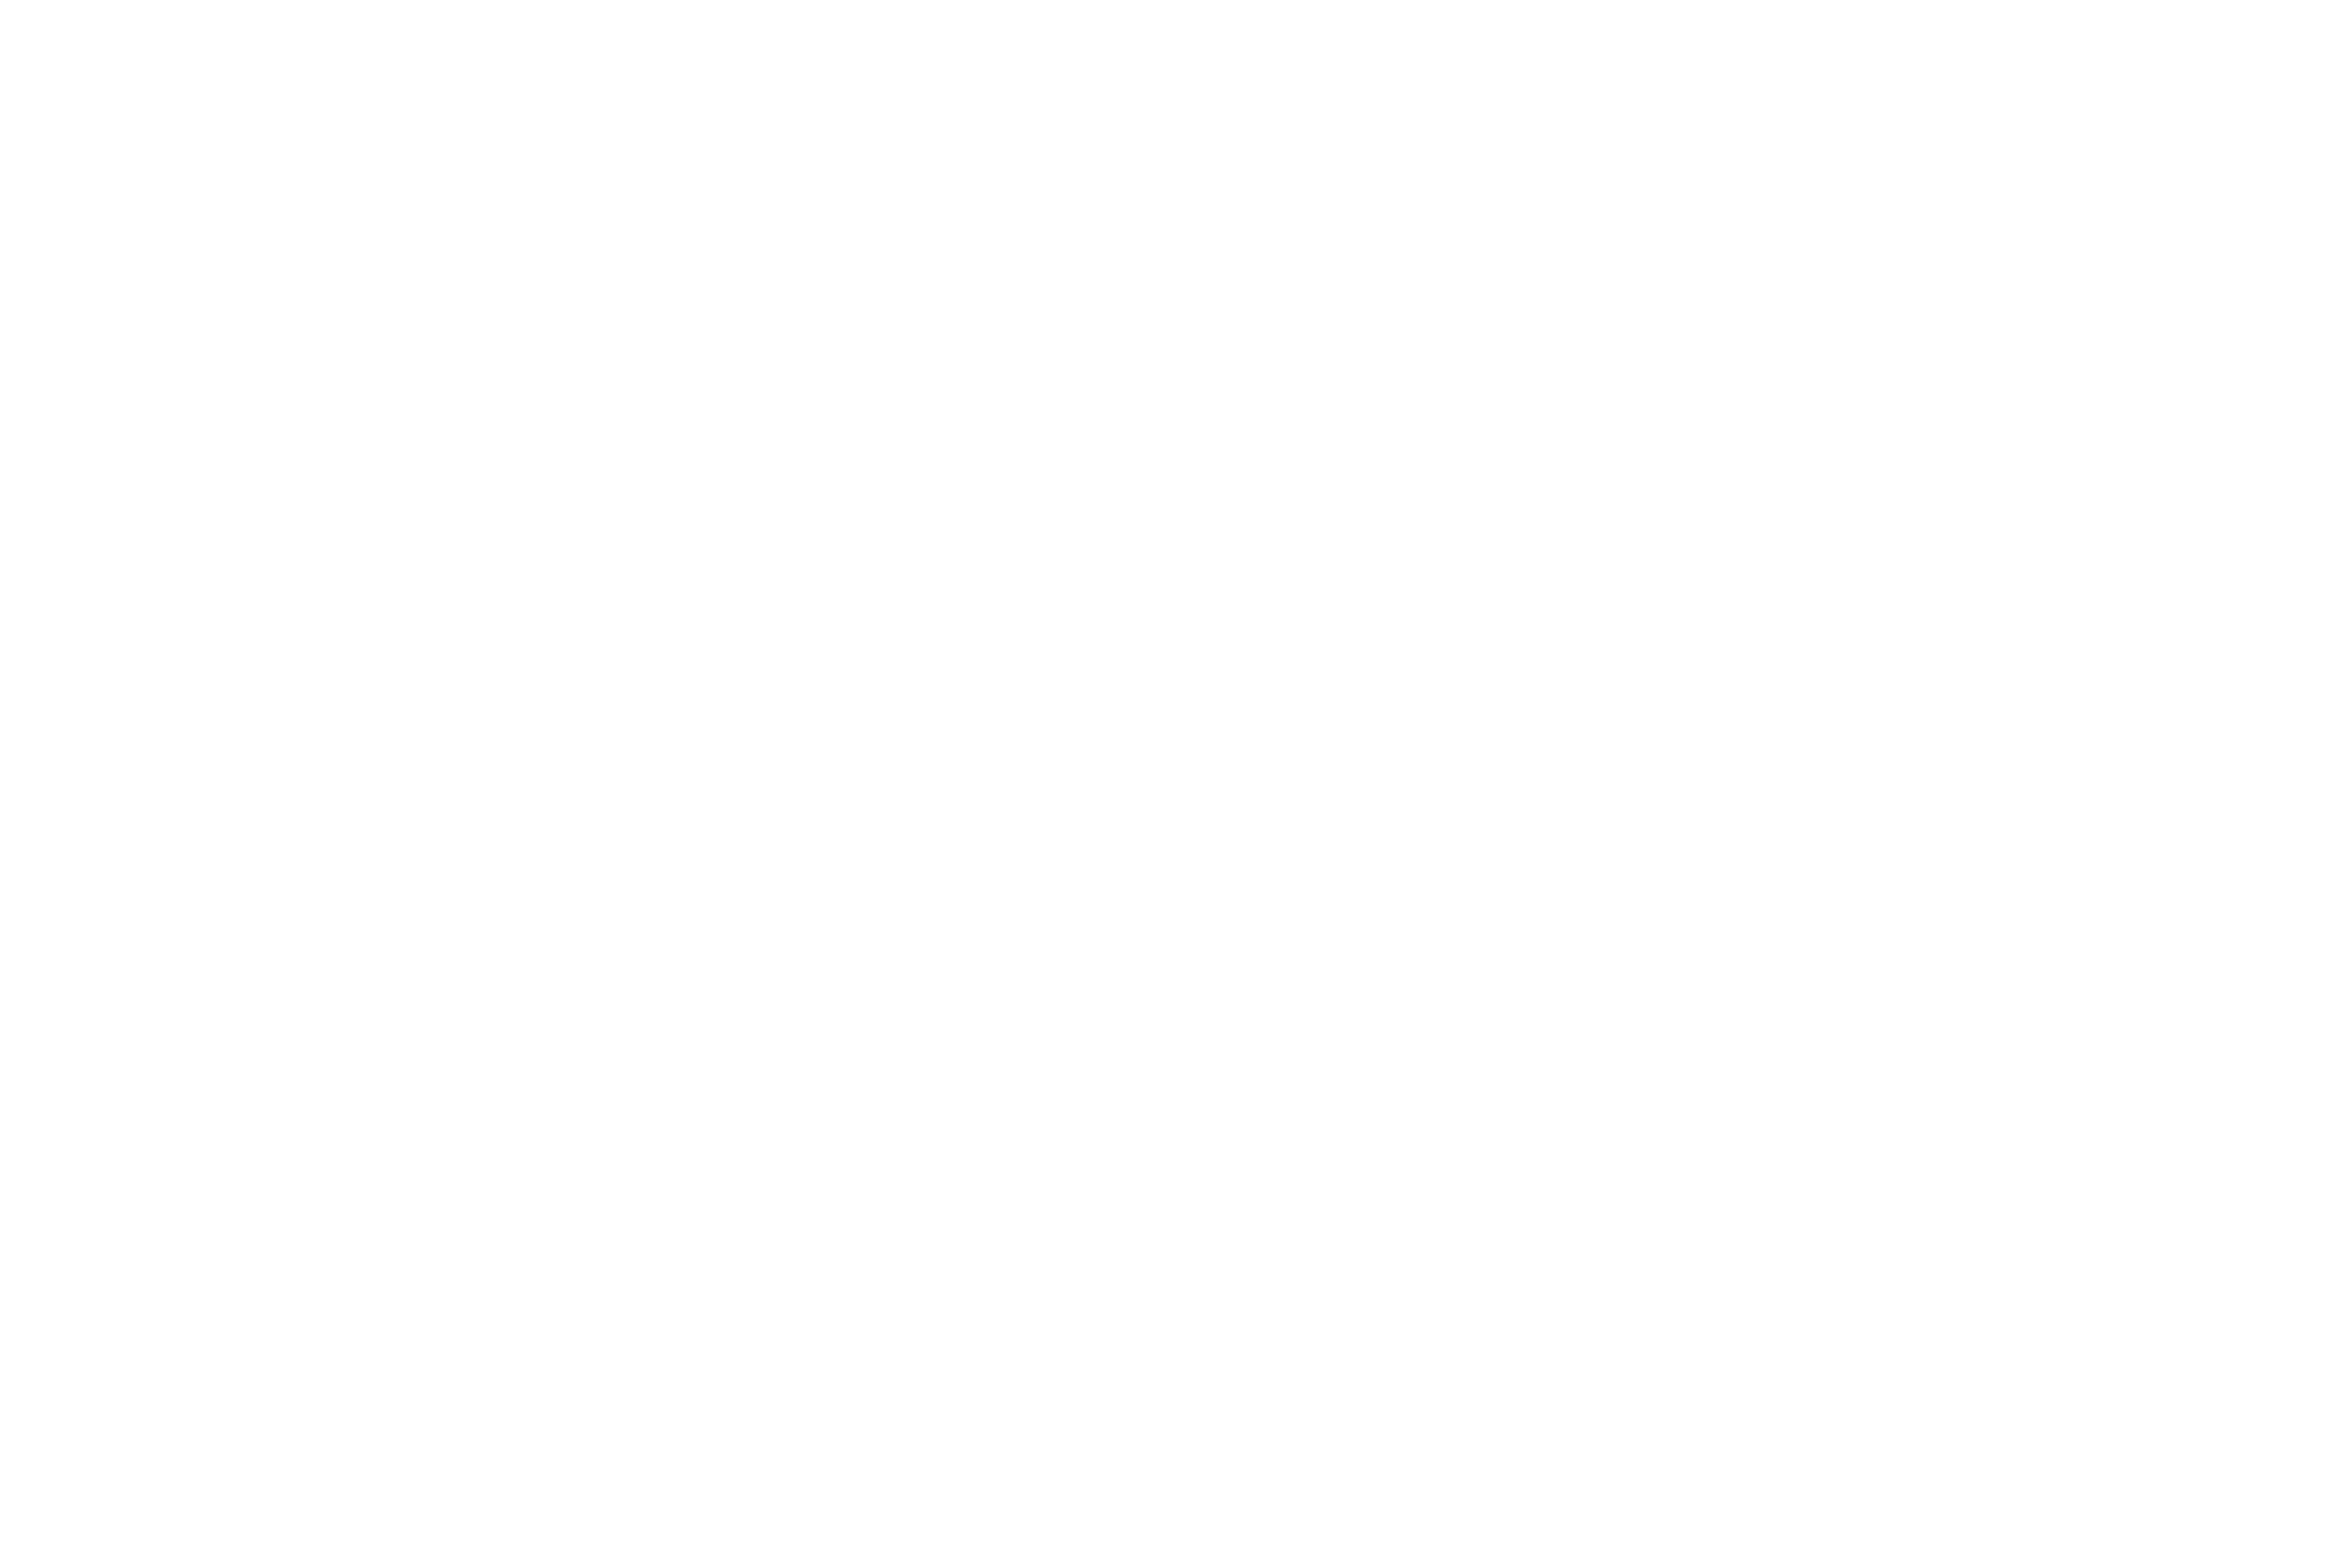 Wild Rangers